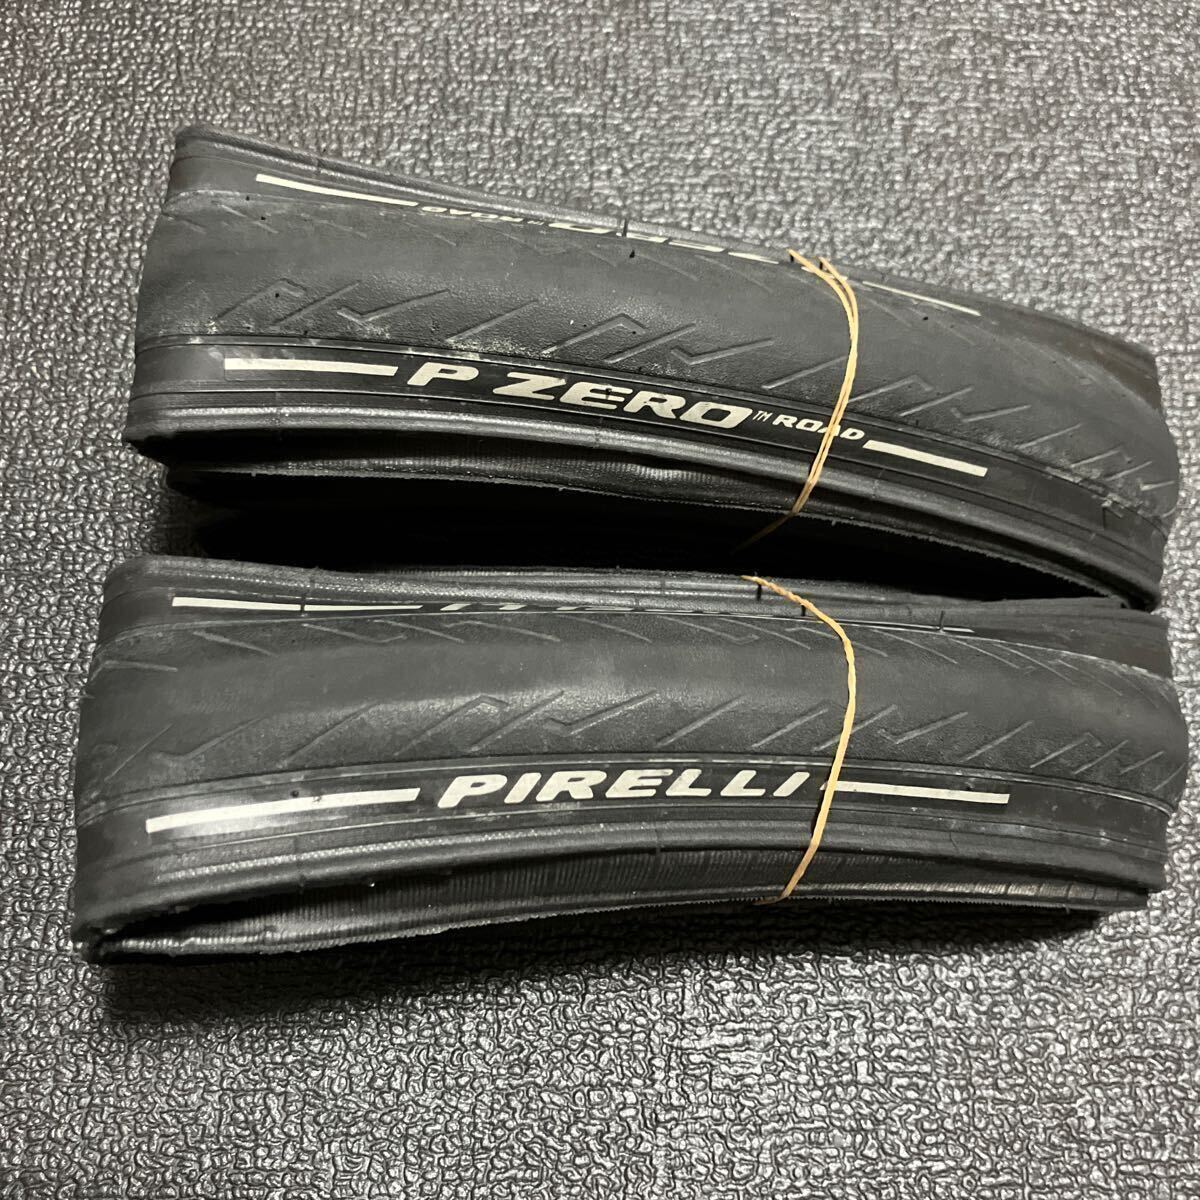 Pirelli P ZERO ROAD 700×26C ピレリ クリンチャータイヤ ロードバイク の画像1